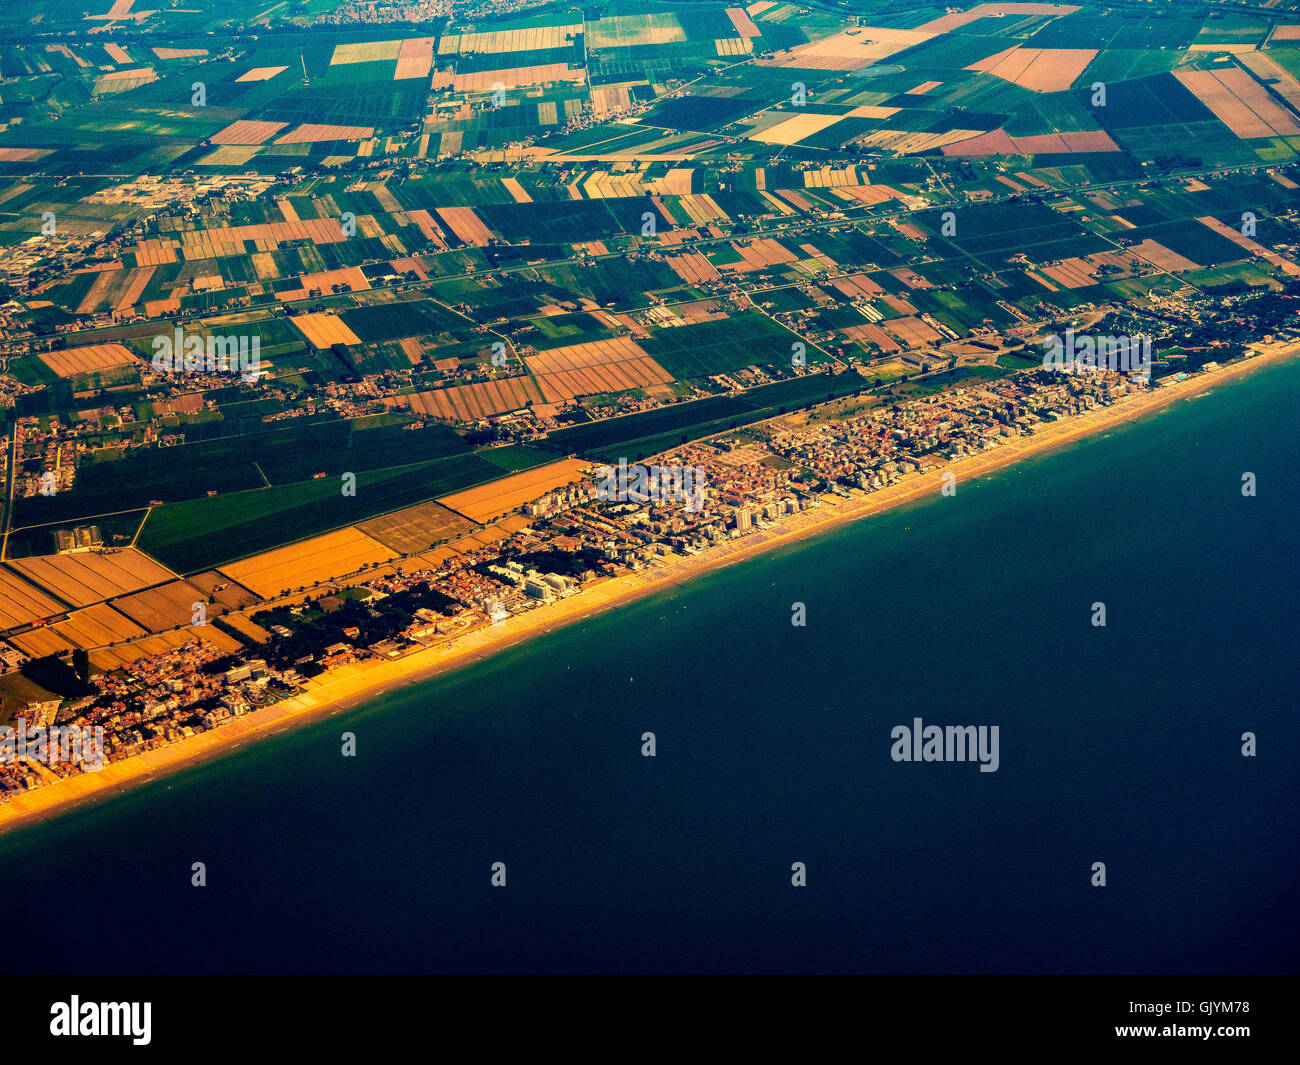 The Lido di Jesolo, or Jesolo Lido, beach area of the comune of Jesolo in the province of Venice, Italy. Stock Photo